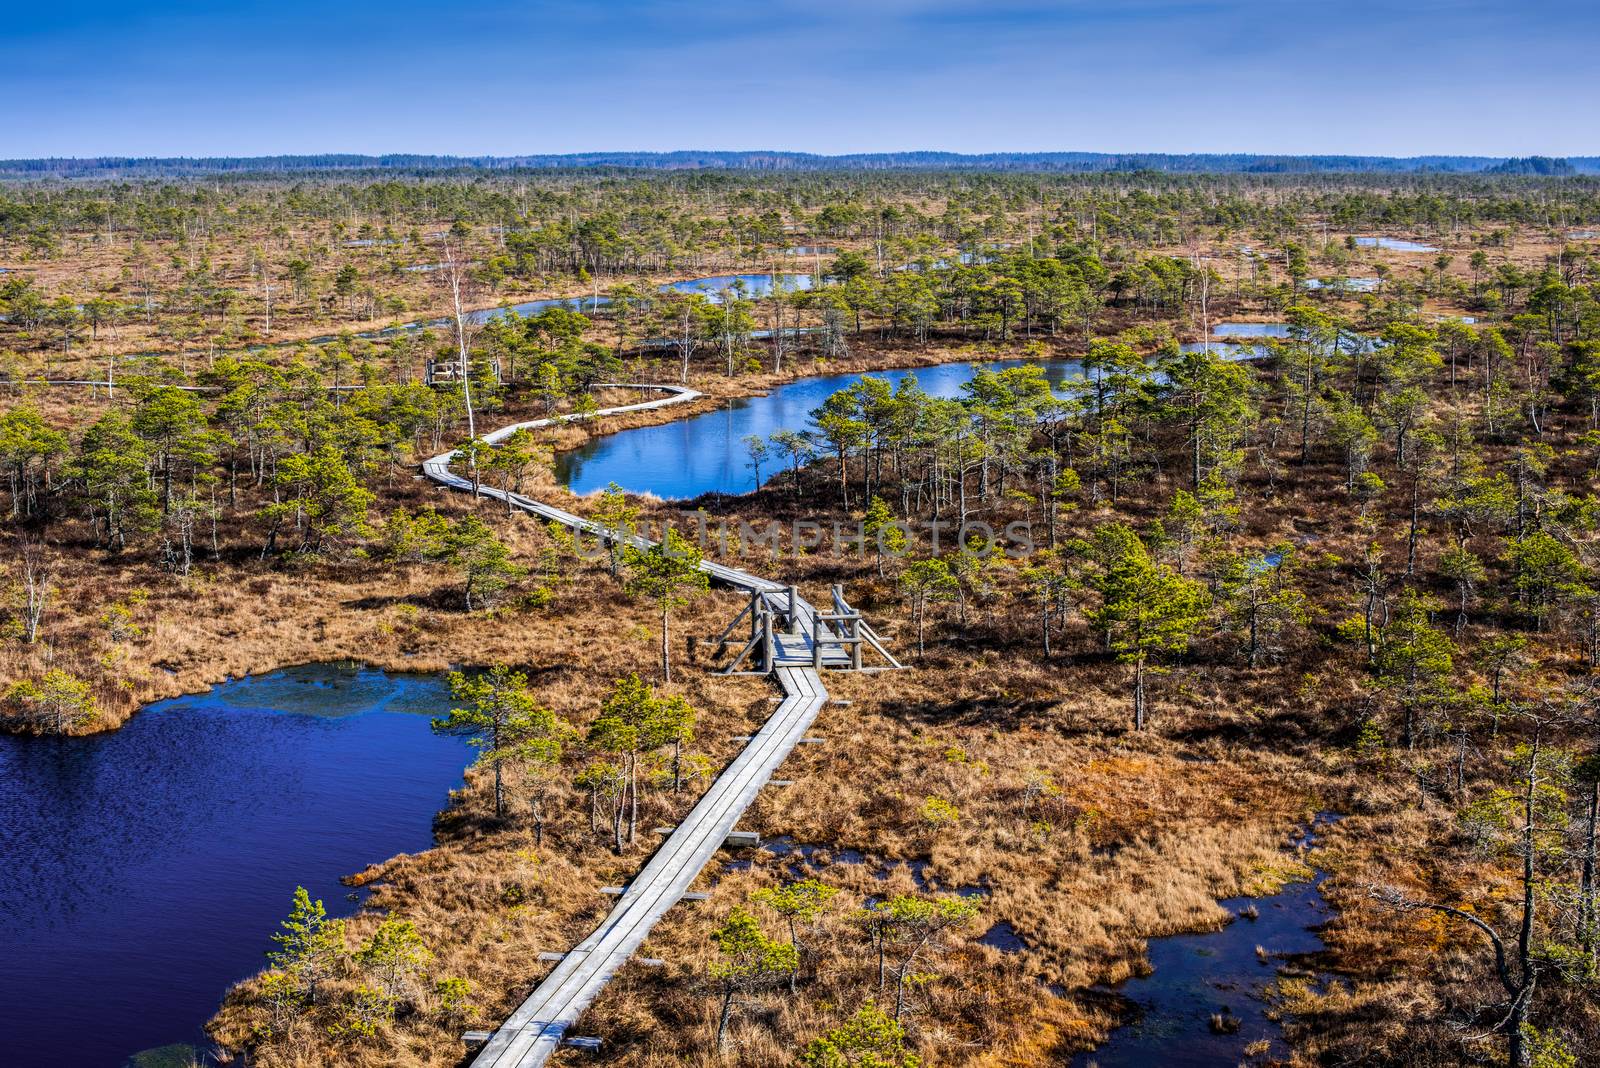 Swamp or bog in Kemeri National park in Latvia by infinityyy